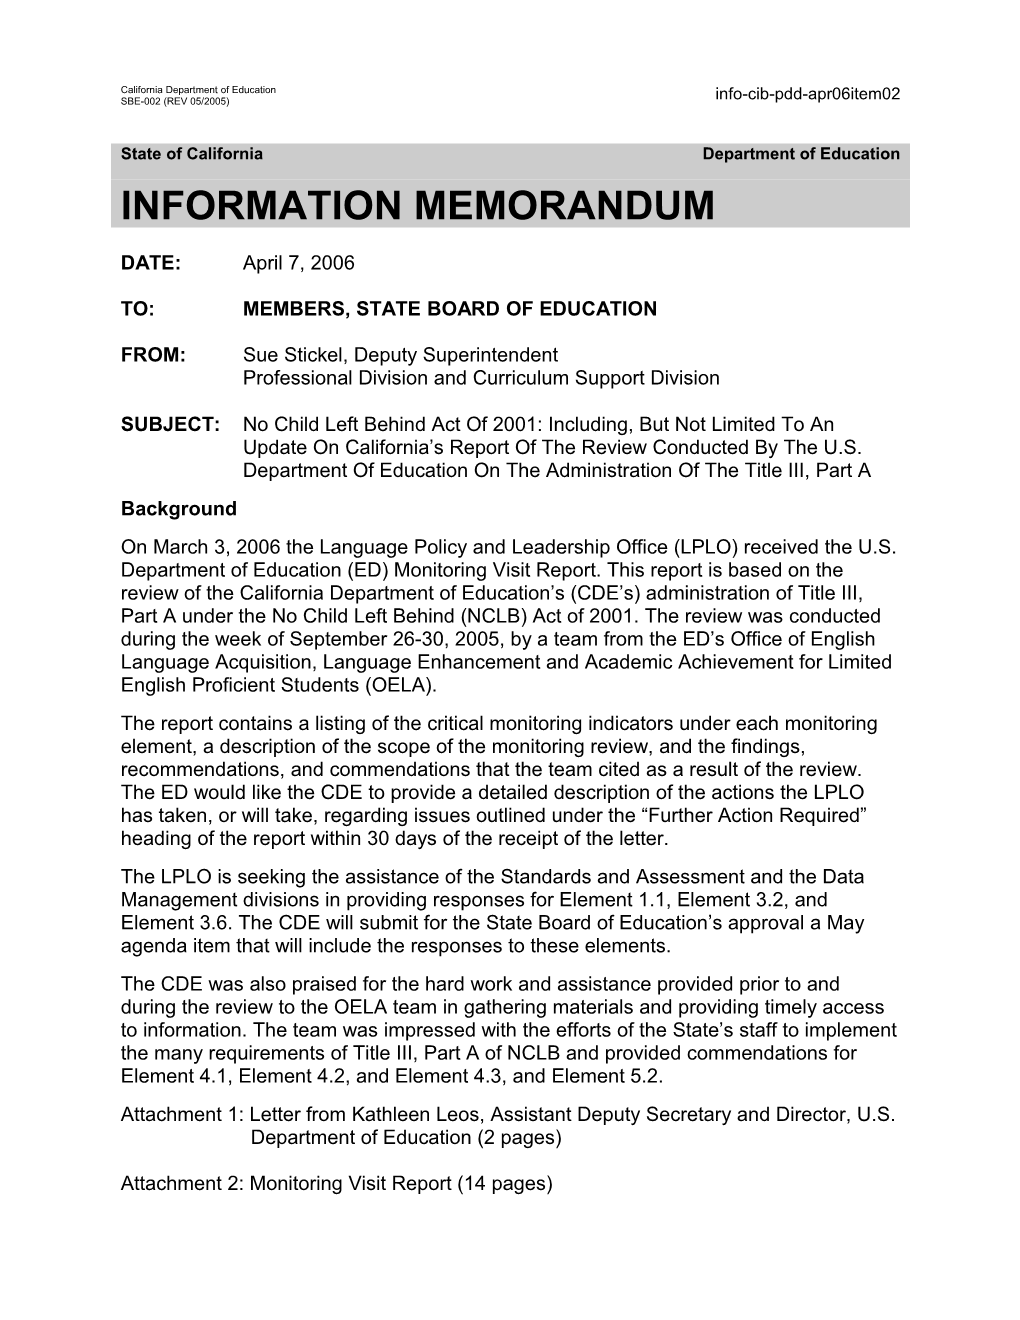 April 2006 PDD Item 2 - Information Memorandum (CA State Board of Education)